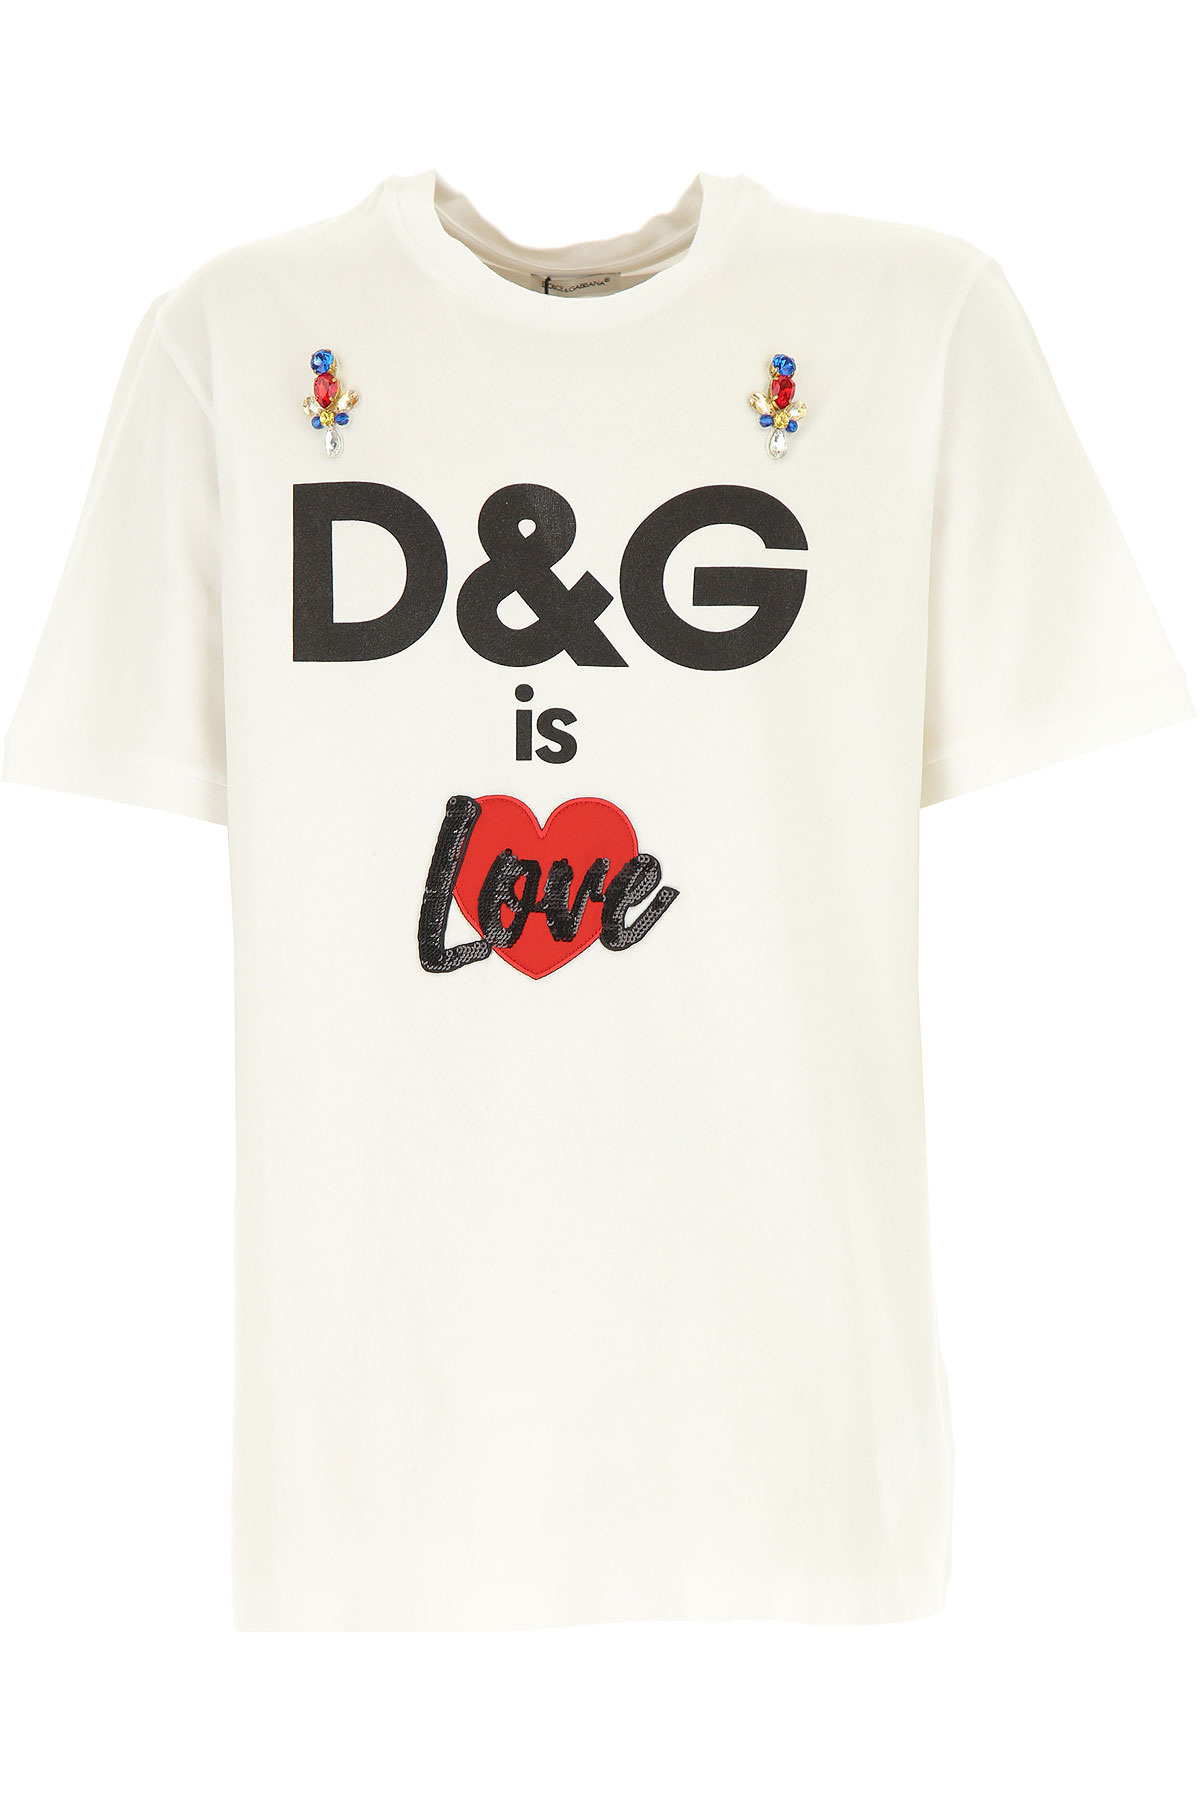 Dolce & Gabbana Kinder T-Shirt für Mädchen Günstig im Outlet Sale, Weiss, Baumwolle, 2017, 10Y 6Y